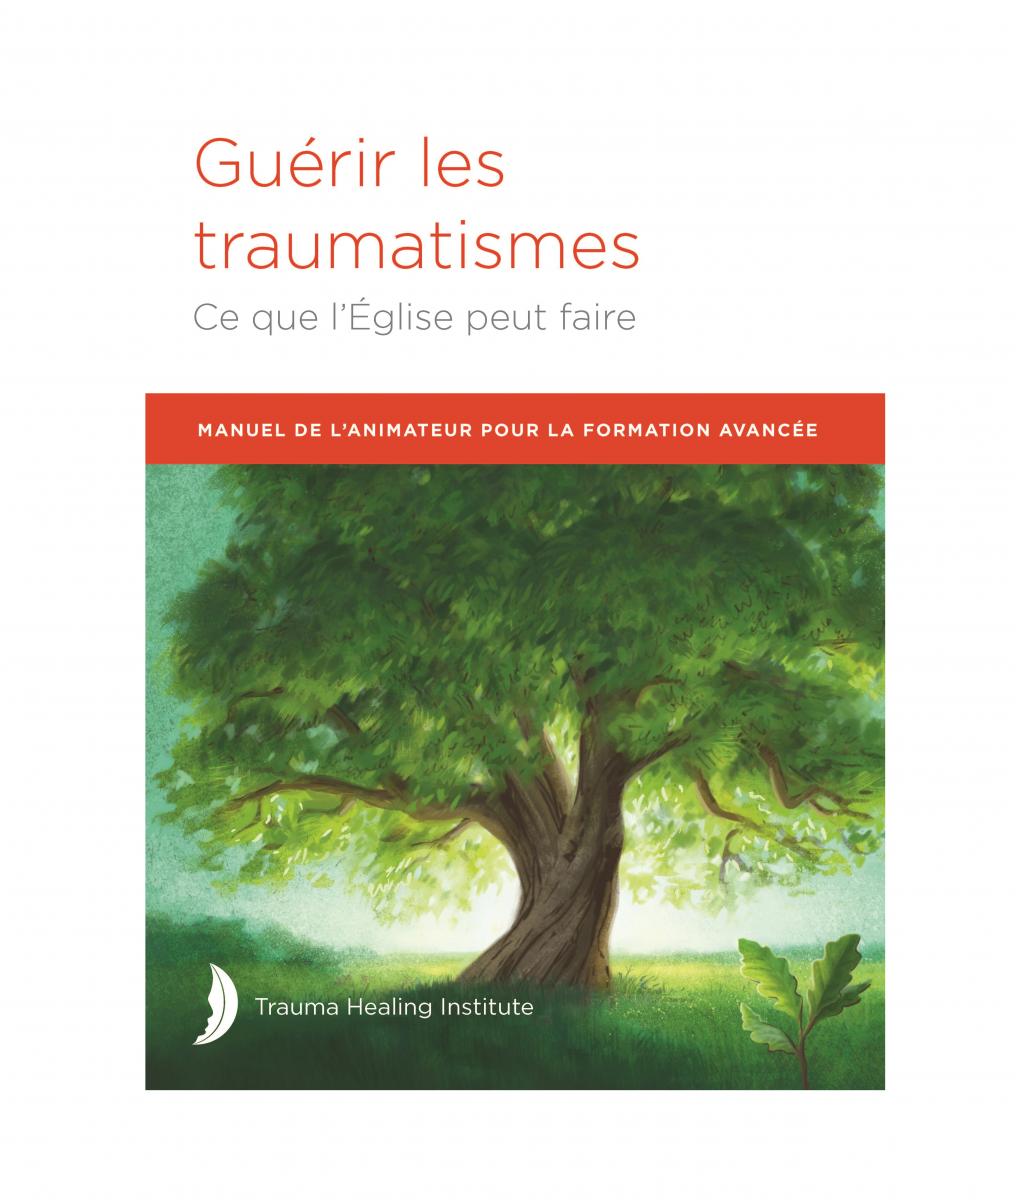 Guérir les traumatismes: Manuel de L'animateur pour la Formation Avancée edición 2021 - Impresión bajo demanda